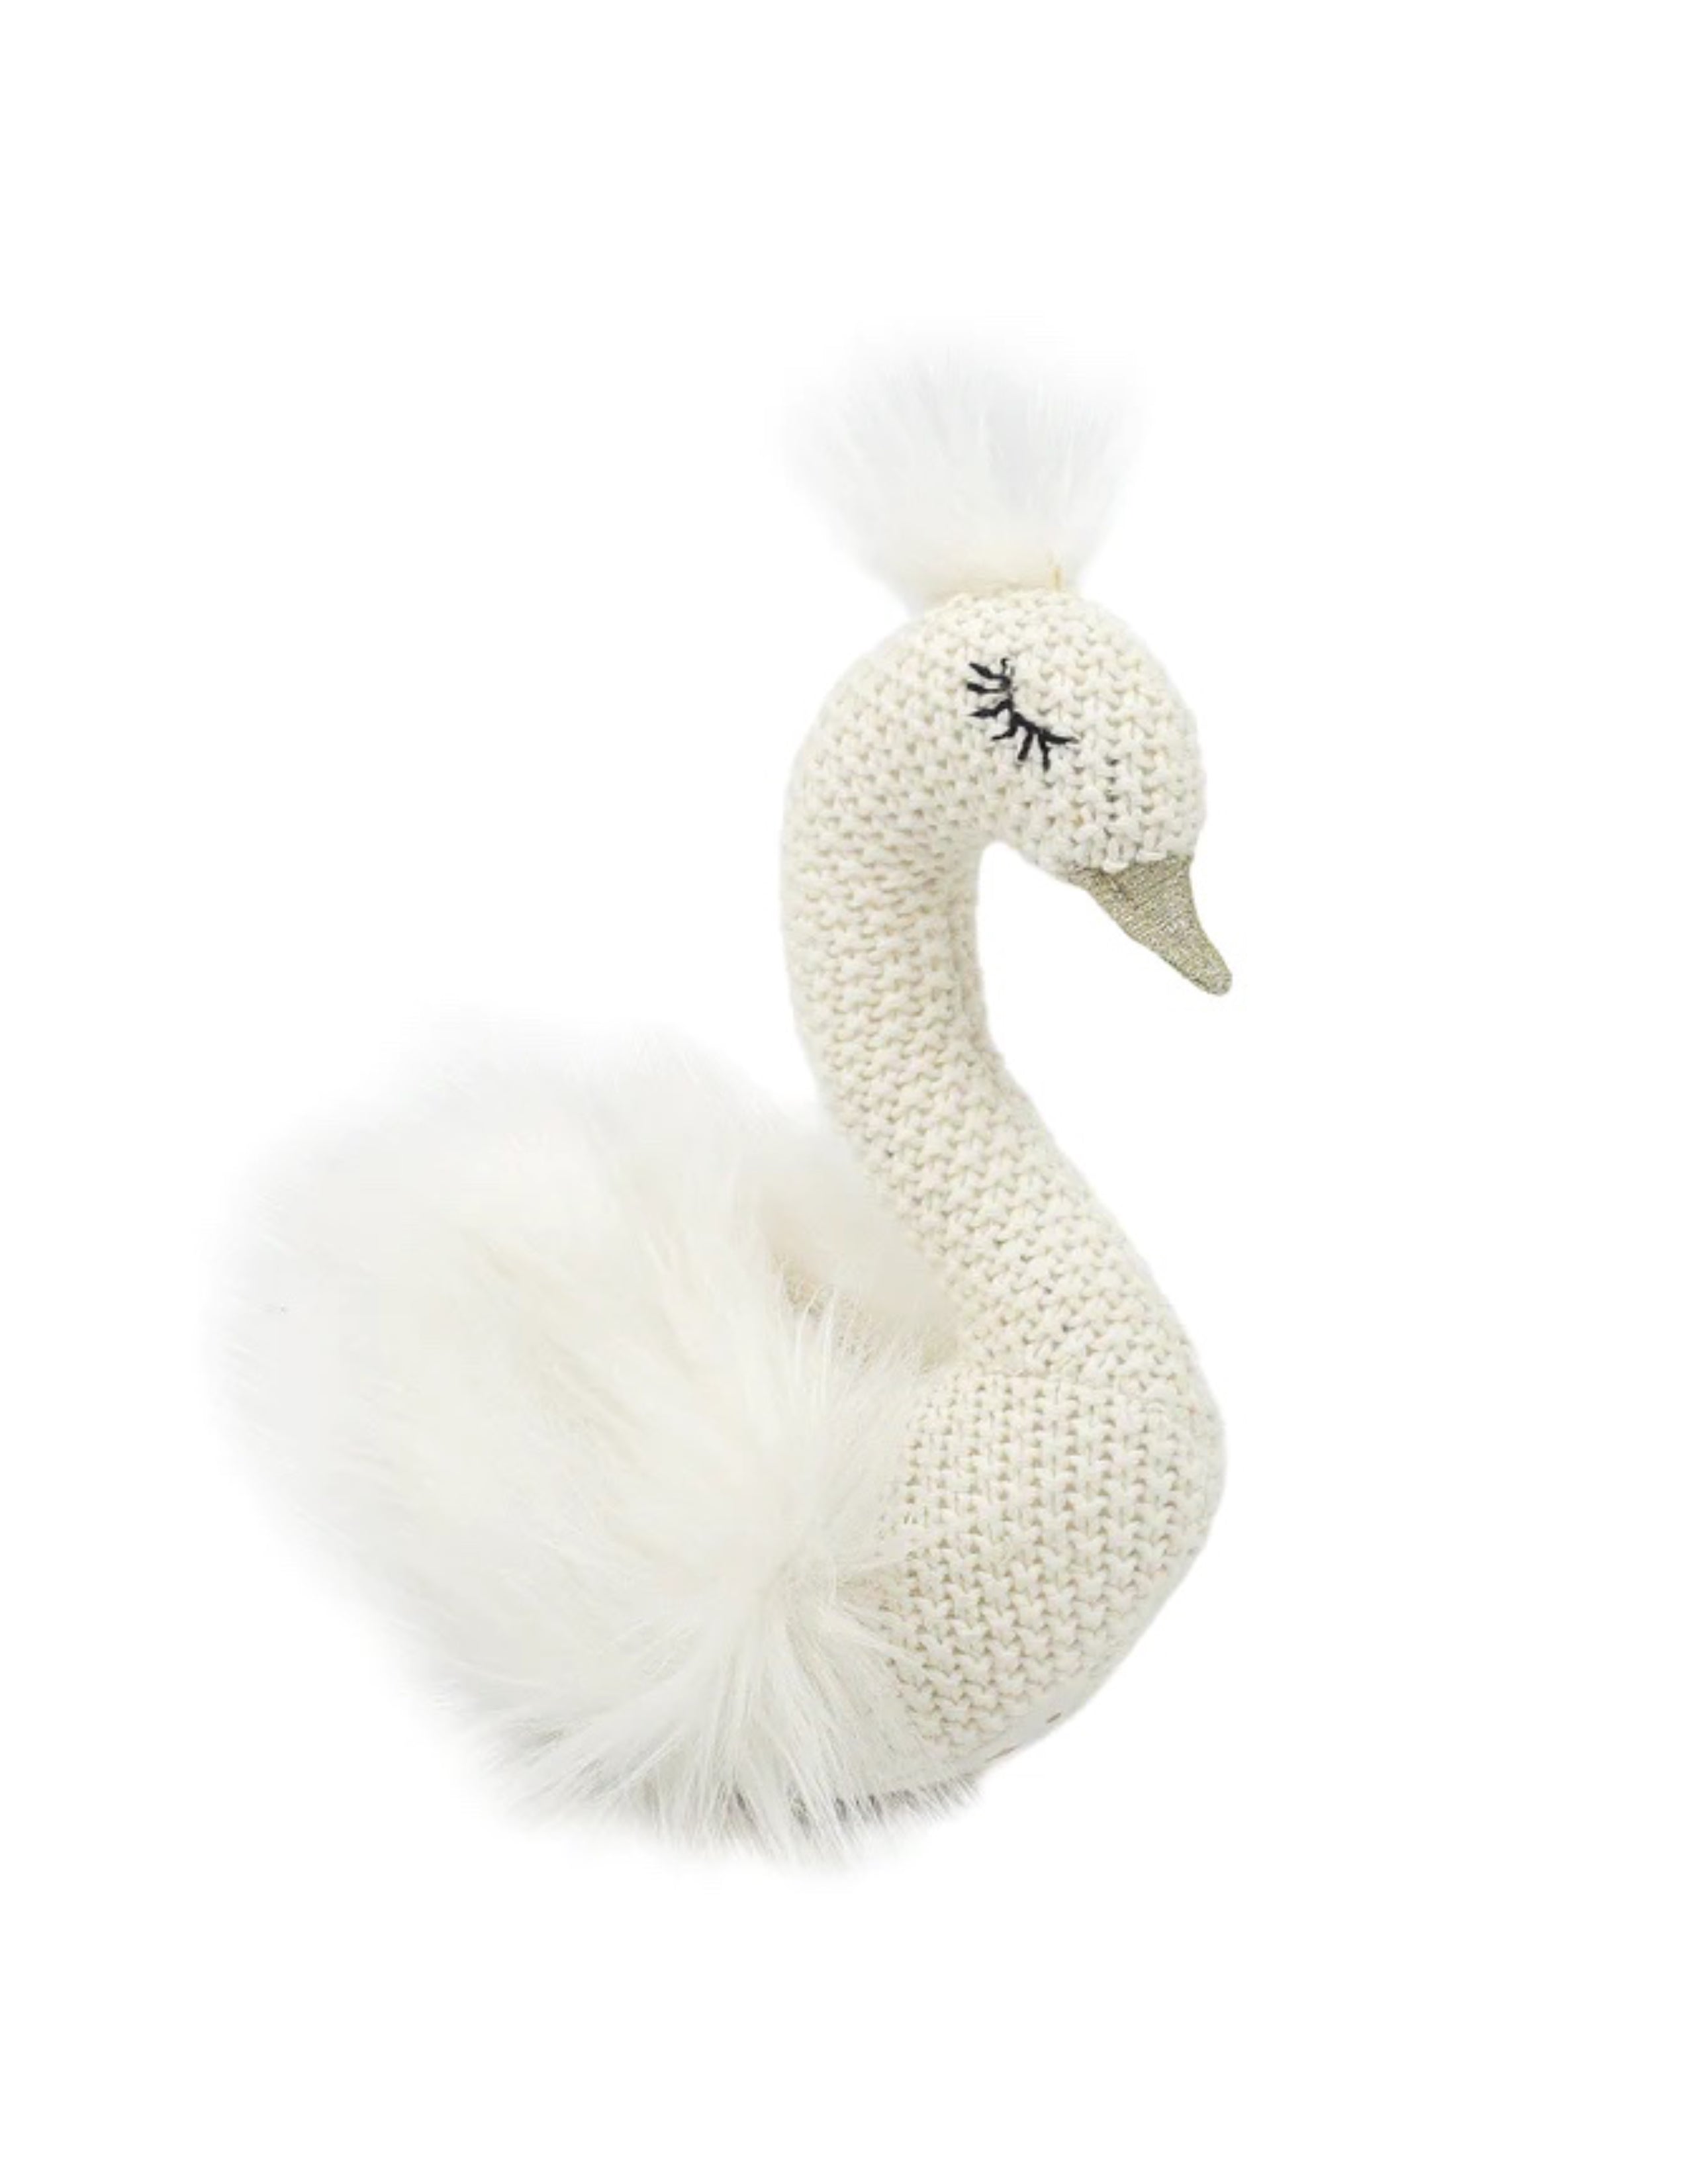 'Layla' Knit Swan